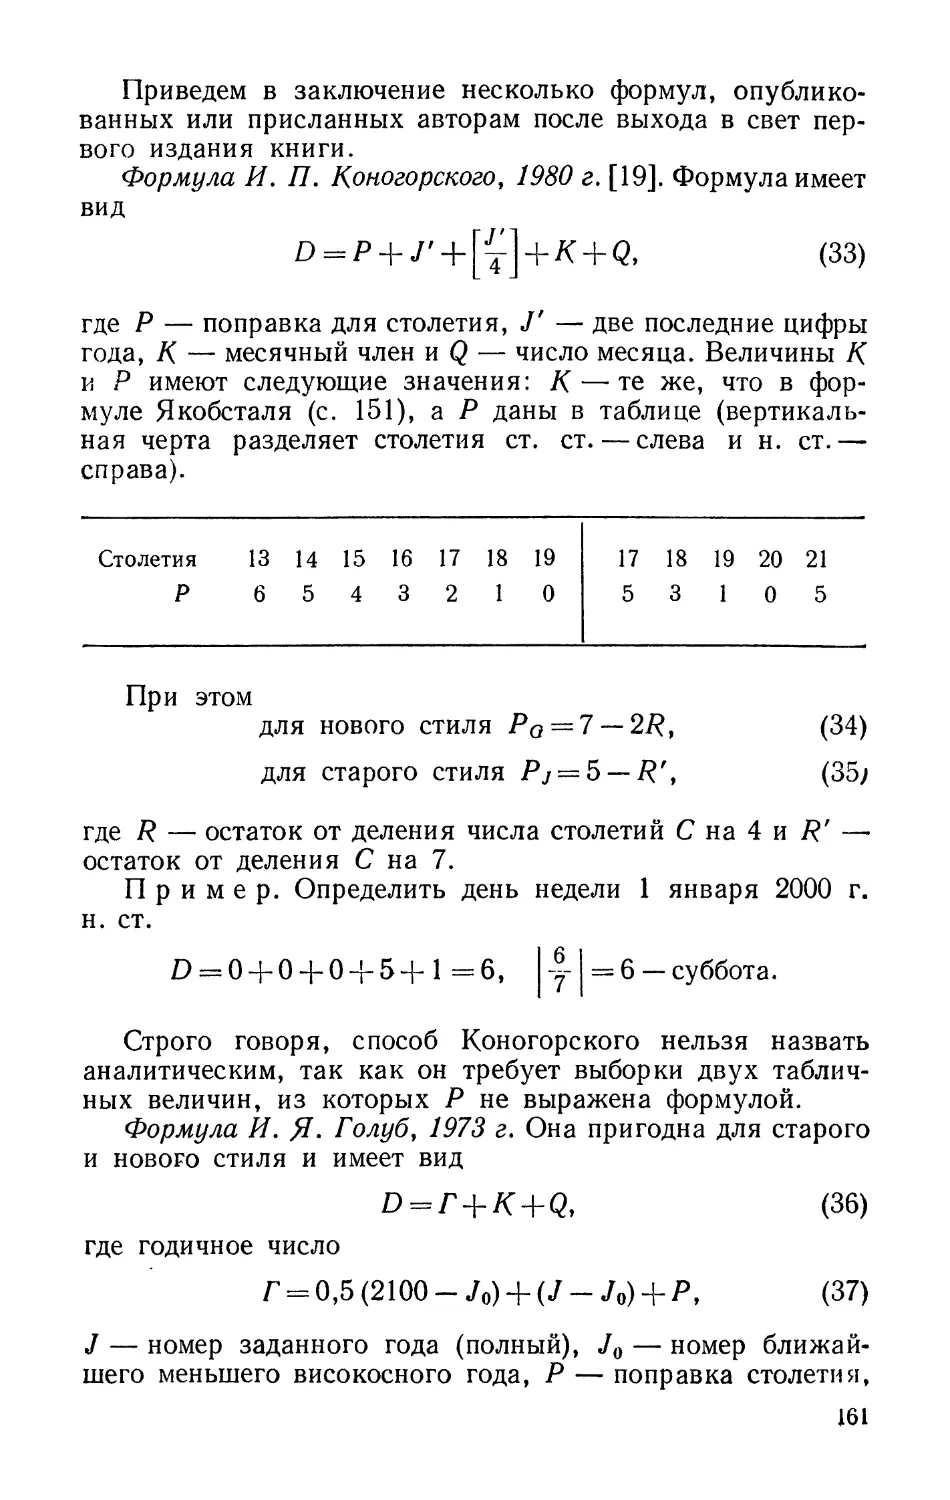 Формула И. П. Коногорского, 1980 г.
Формула И. Я. Голуб, 1973 г.